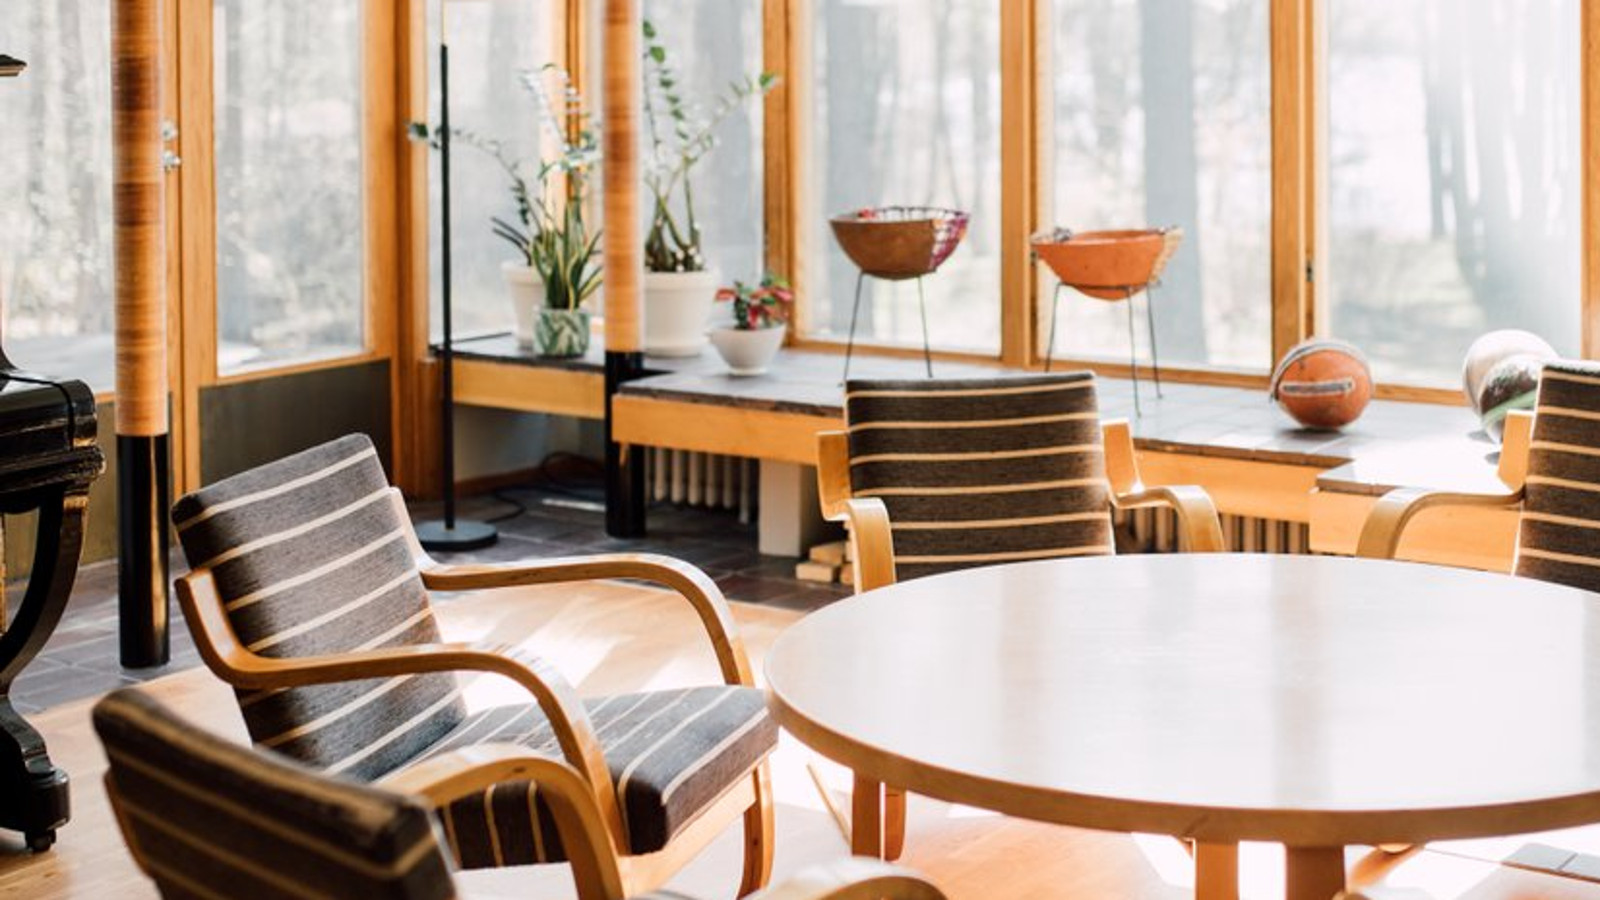 Kuvassa on näkymä Alvar Aallon suunnittelemasta Kantolan talosta.  Kuvassa on etualalla musta-valkoisten nojatuolien ja pöydän ryhmä ja näkymä ulos pystyrimoitetuista kapeahkoista ikkunoista, joita on monta.